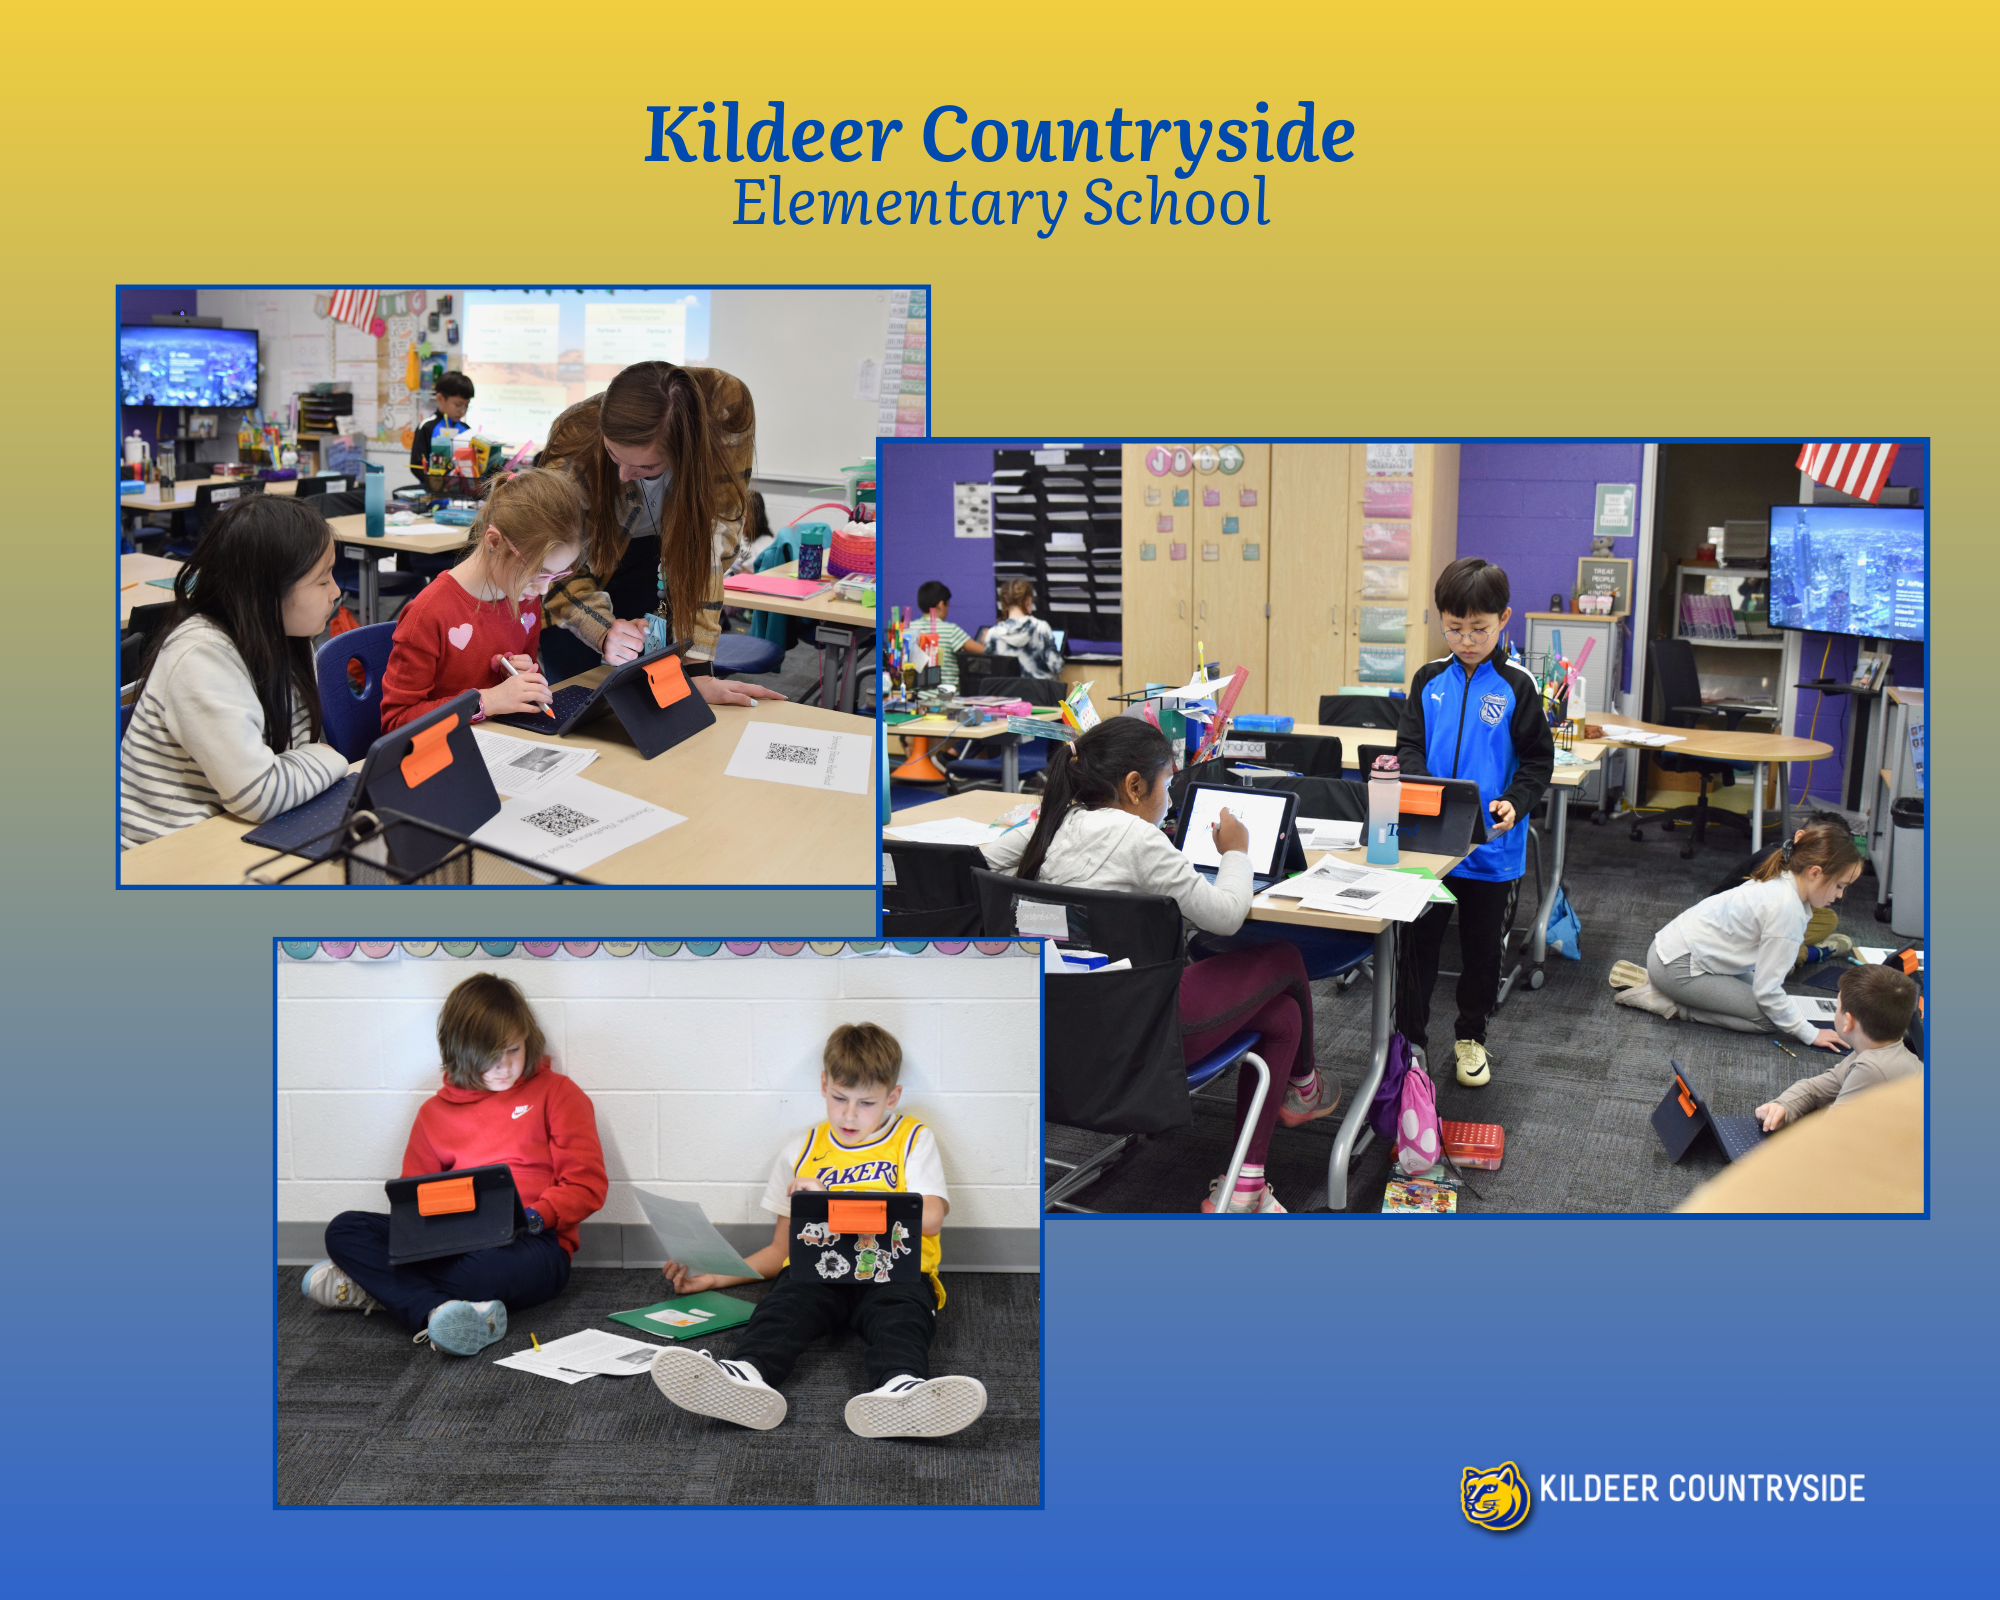 Kildeer Countryside Elementary School Environmental Studies